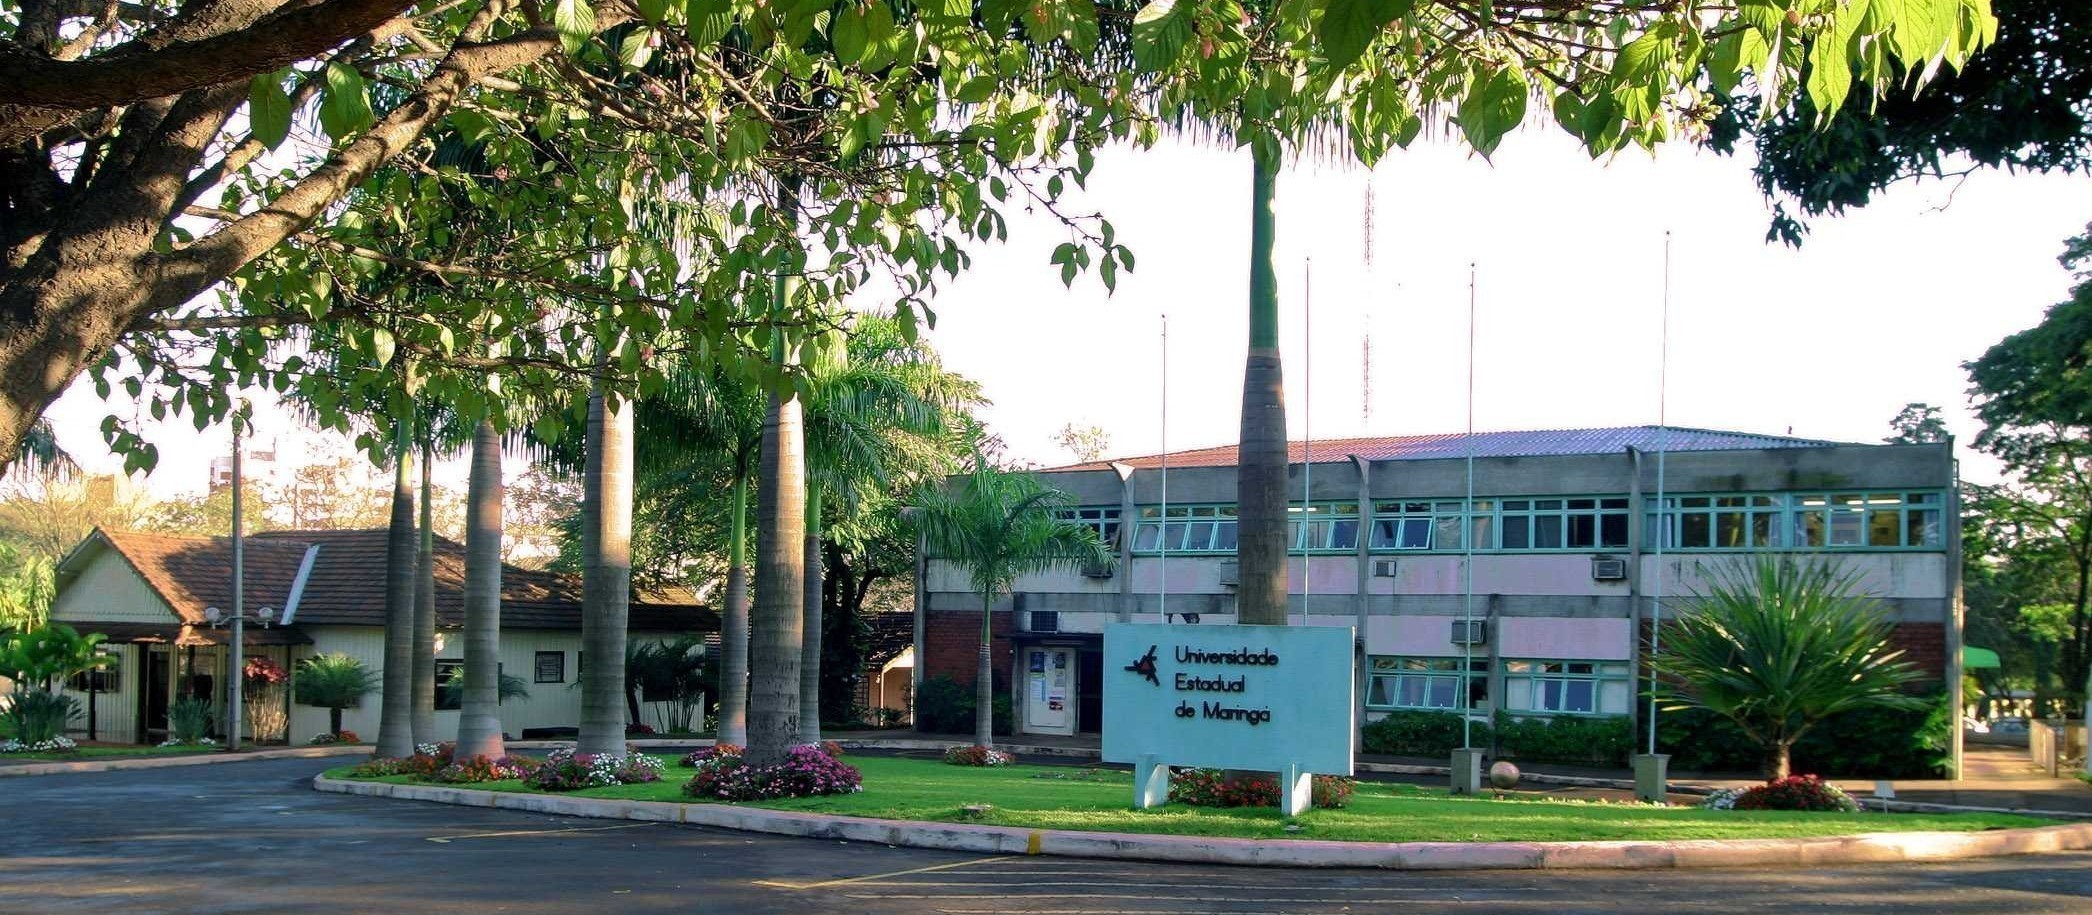 Docentes de Maringá e outras universidades estaduais fazem paralisação na terça-feira (22)